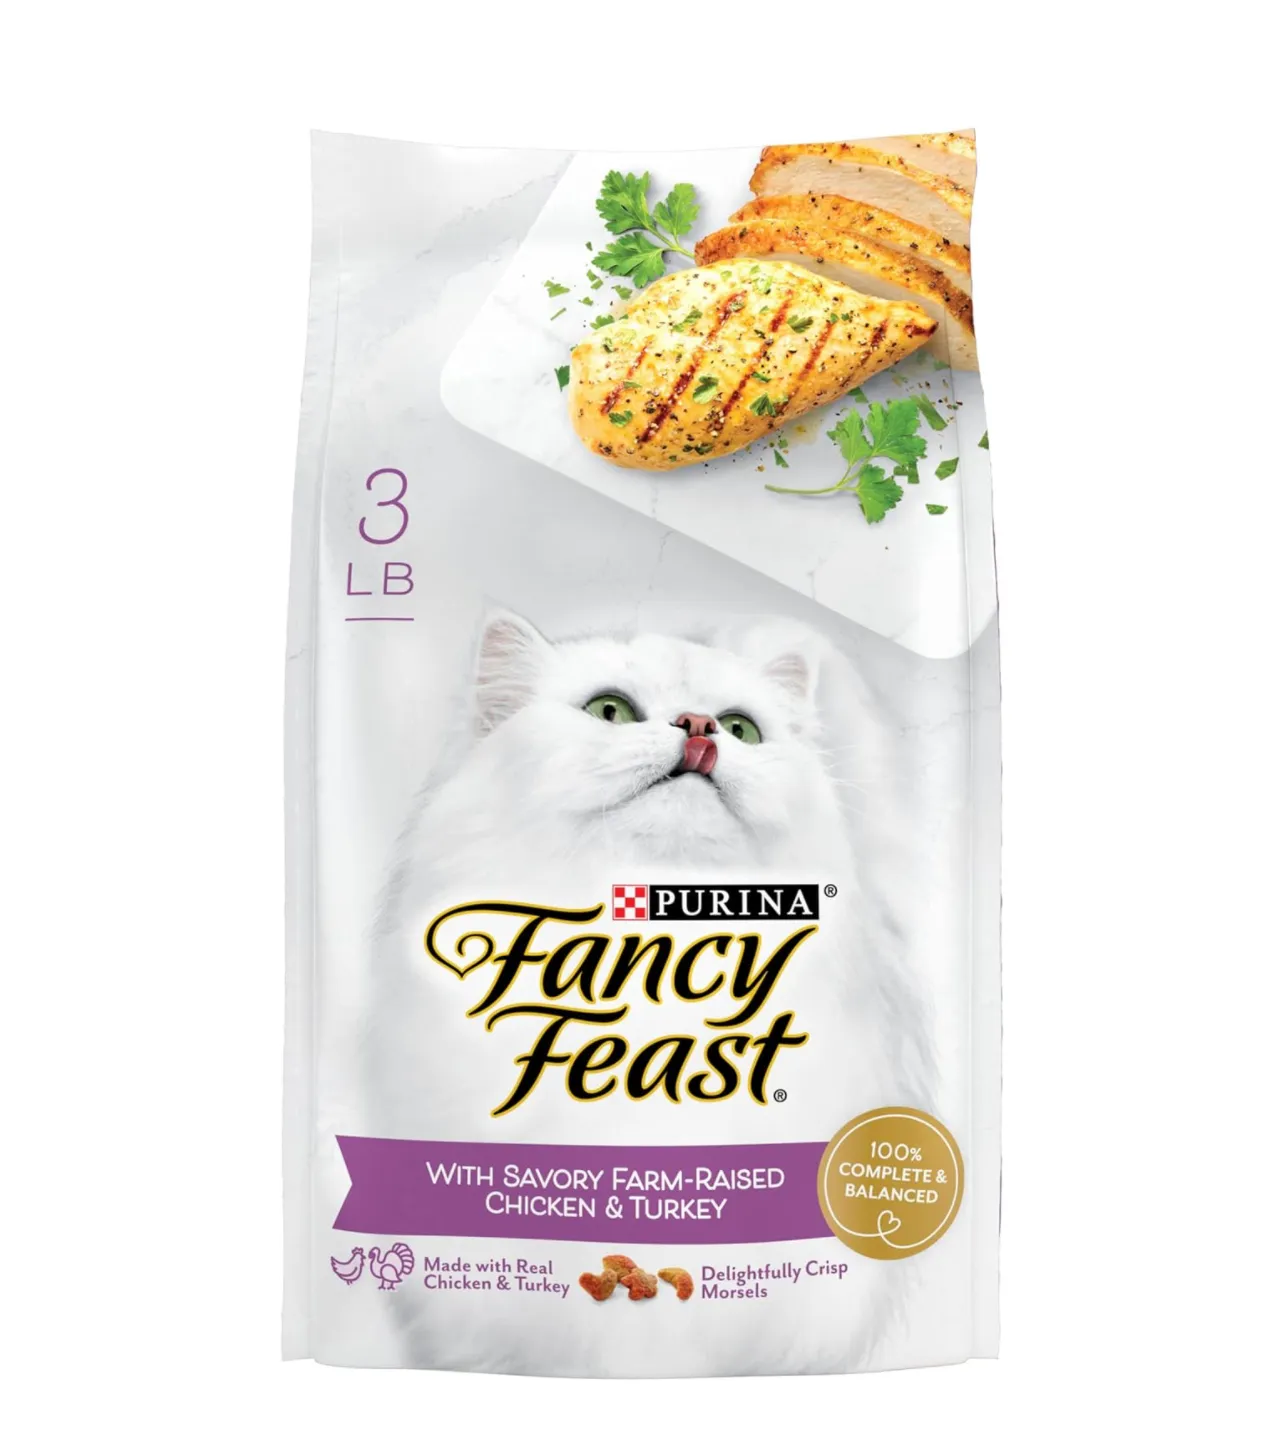 Nutrição completa e equilibrada Ração seca para gatos com frango e peru saborosos, Festa Fantasia, saco de 3 libras